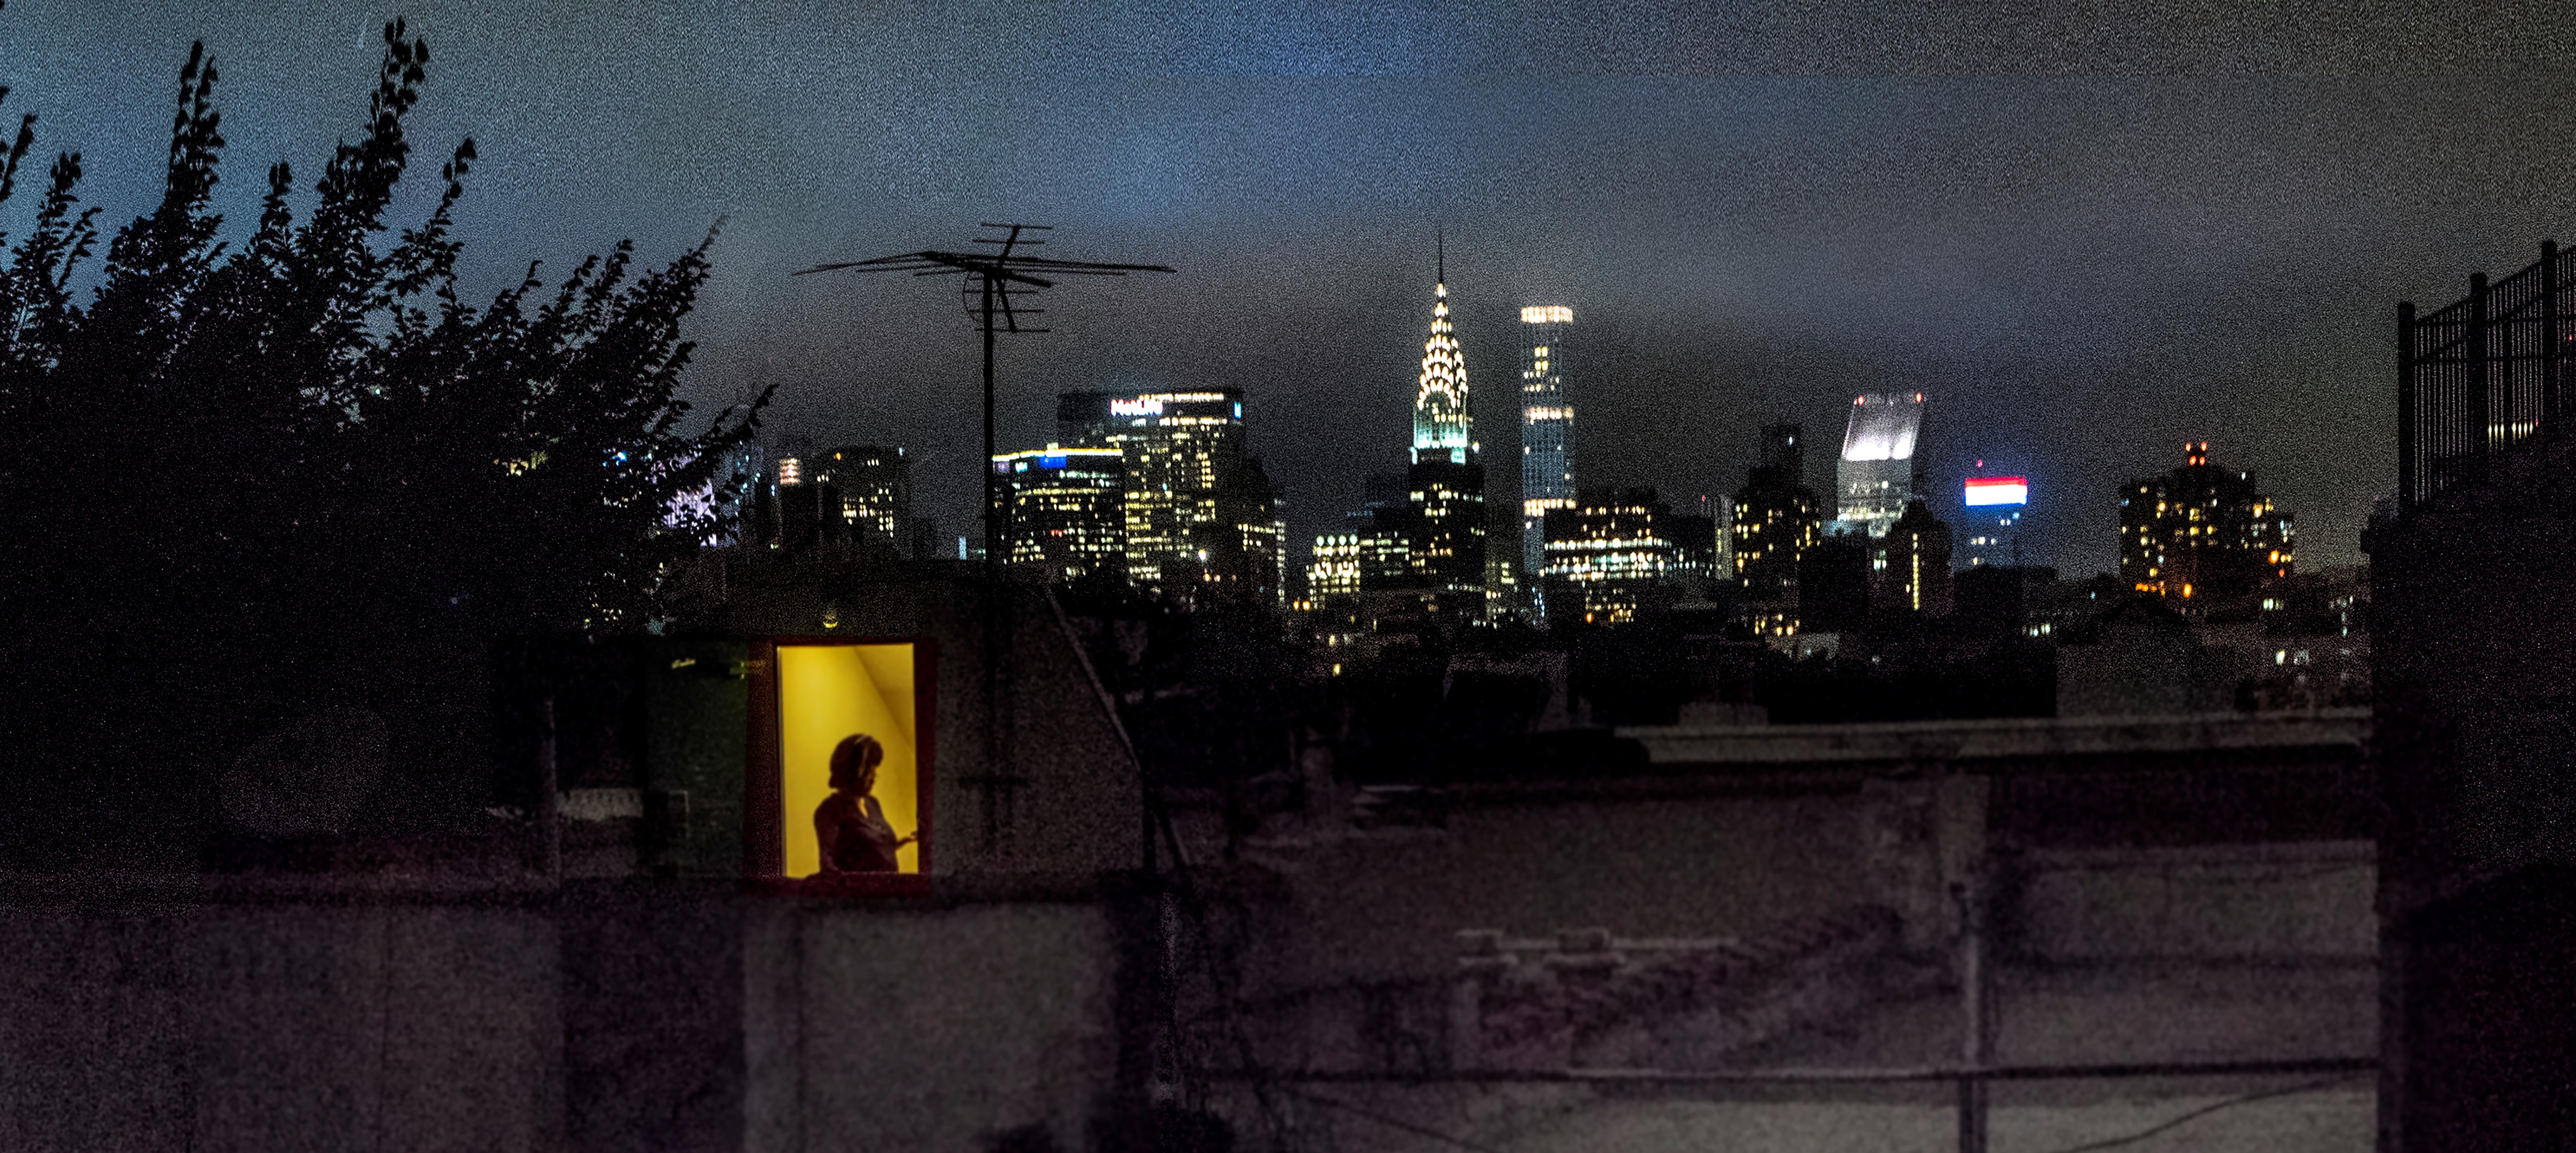 Vue arrière de l'appartement de Sally Davies sur East 5th Street la nuit avec des fenêtres lumineuses.